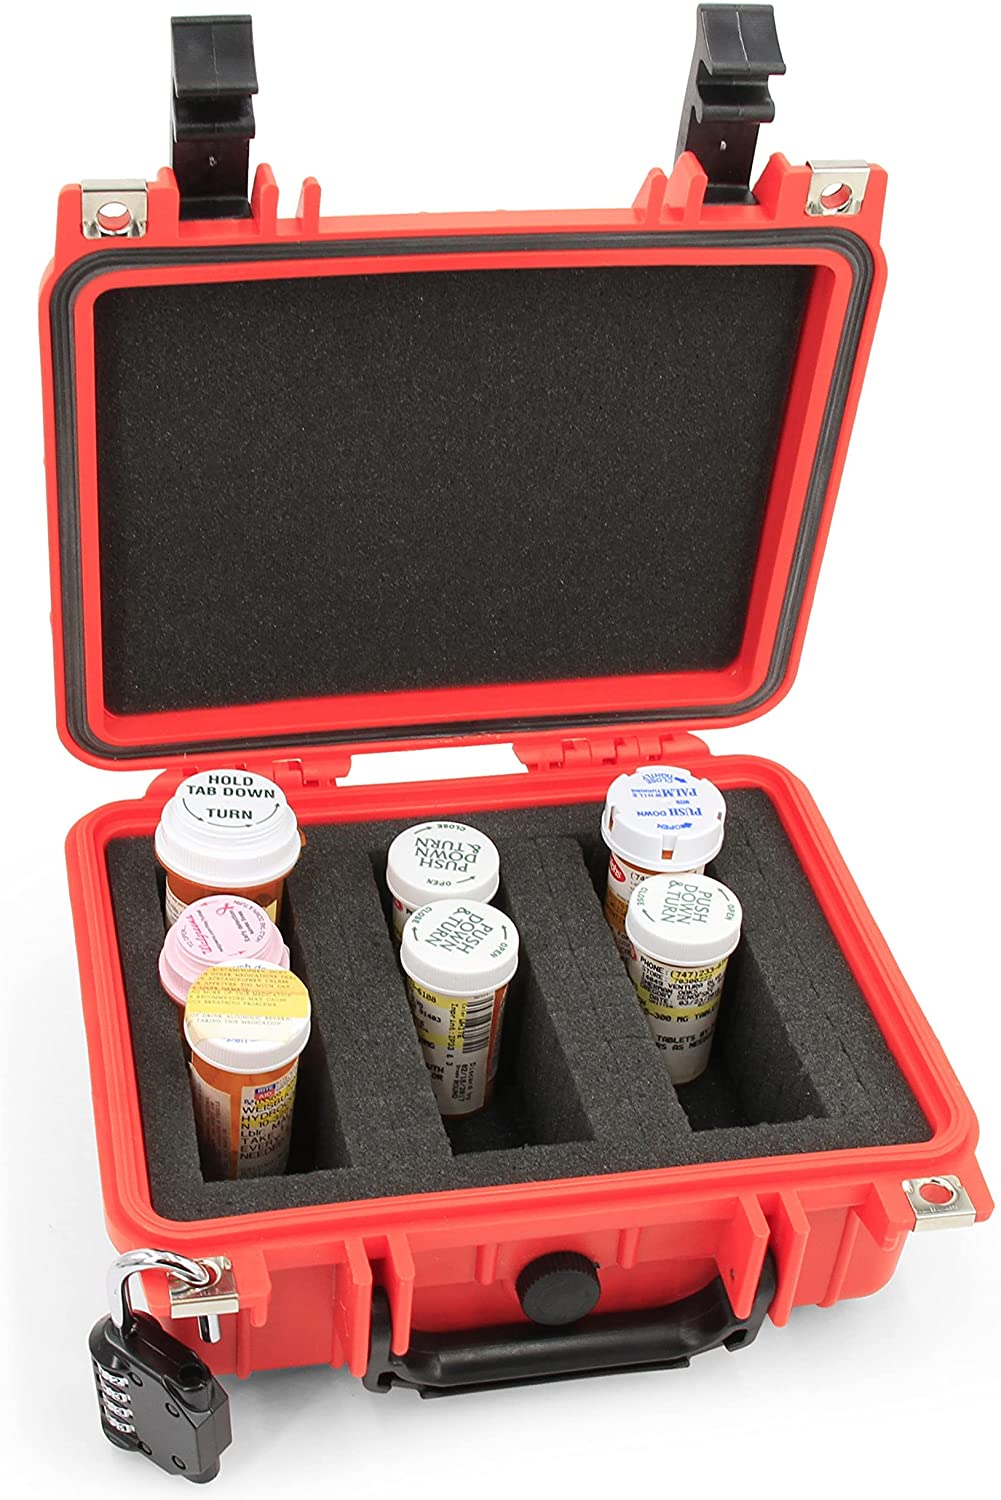 CASEMATIX Medicine Lock Box Case with Customizable Foam - Lockable